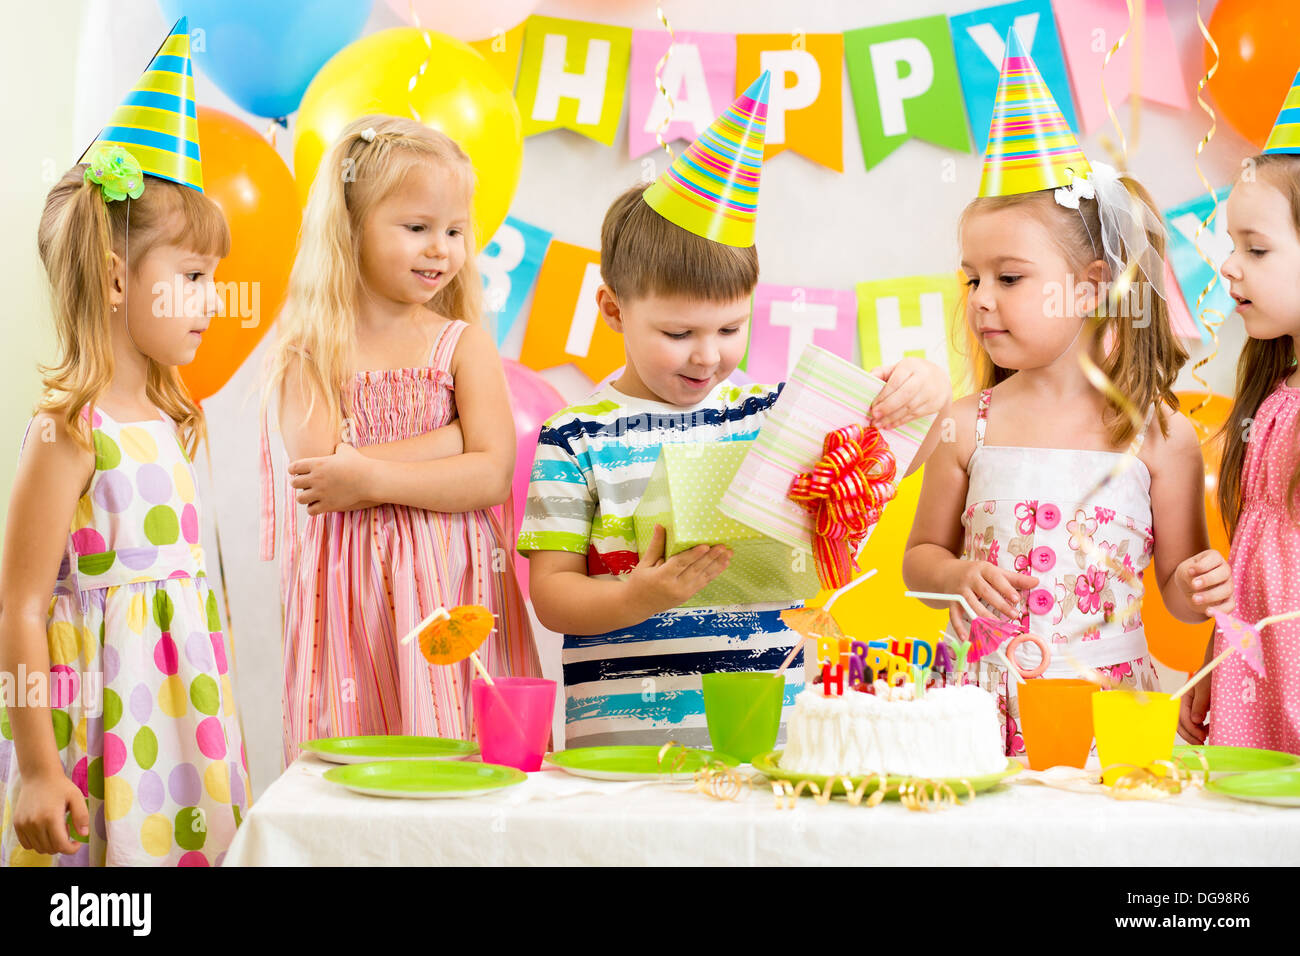 happy kids celebrating birthday holiday Stock Photo